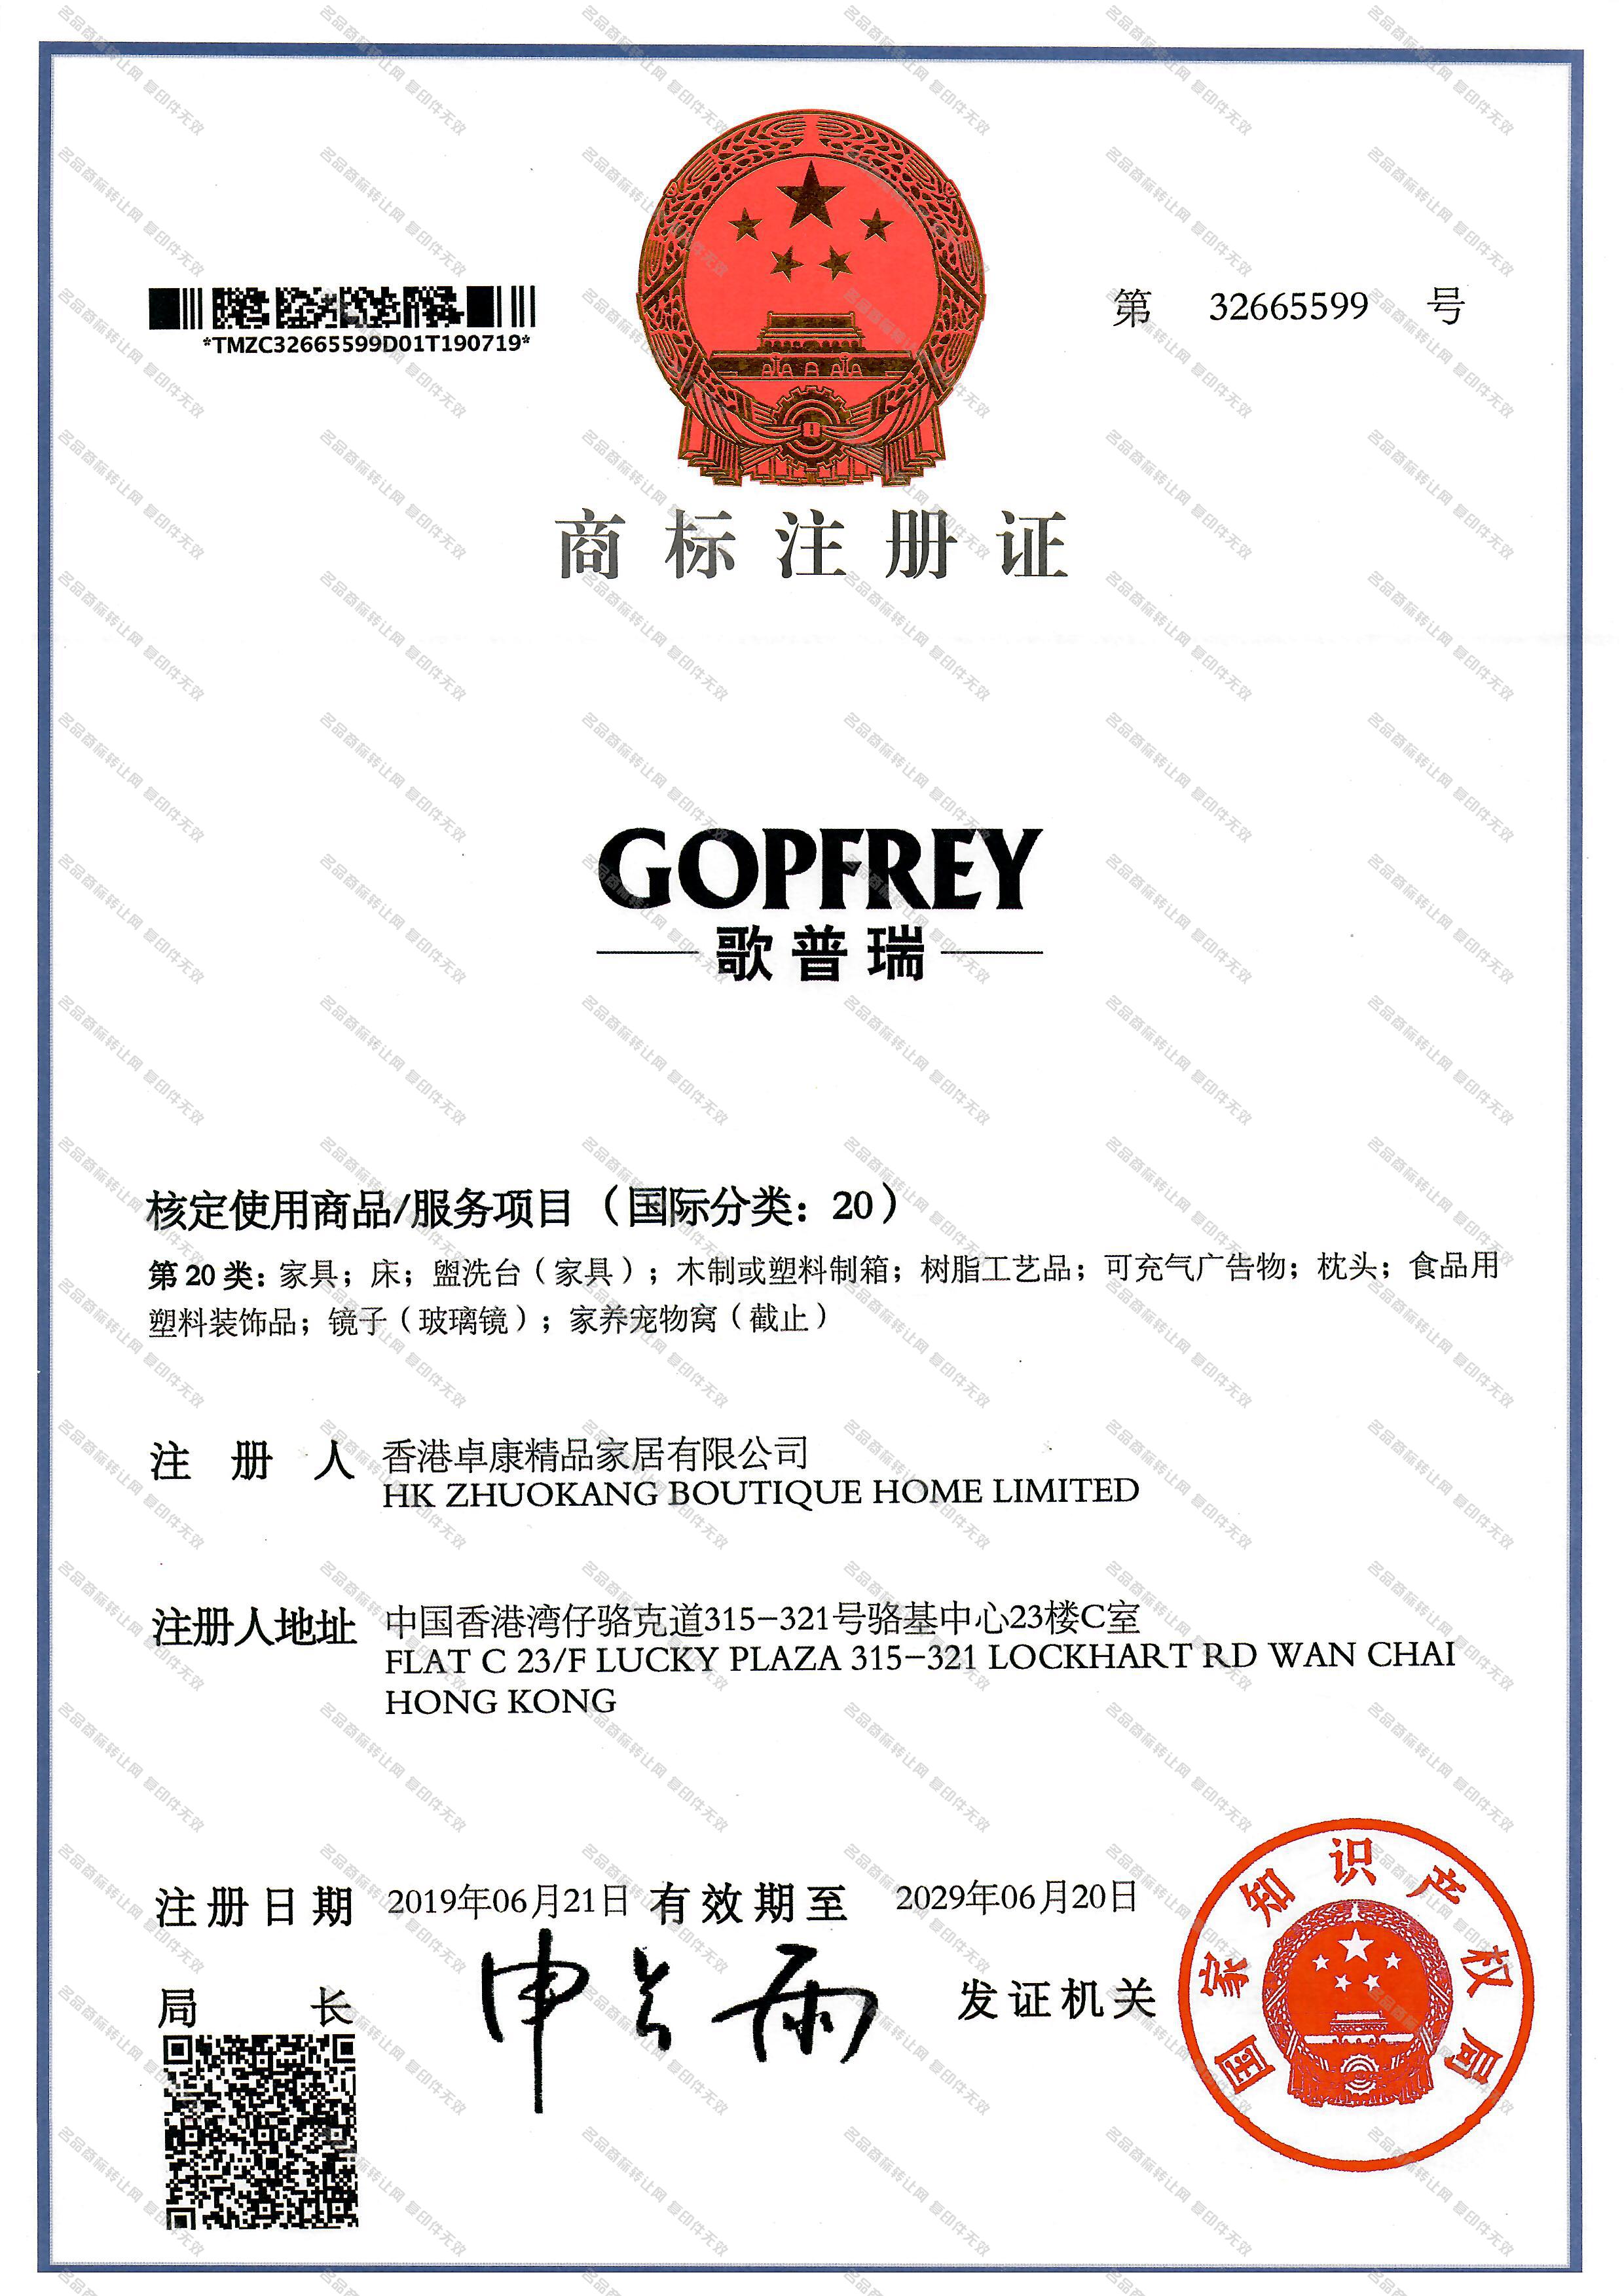 歌普瑞 GOPFREY注册证